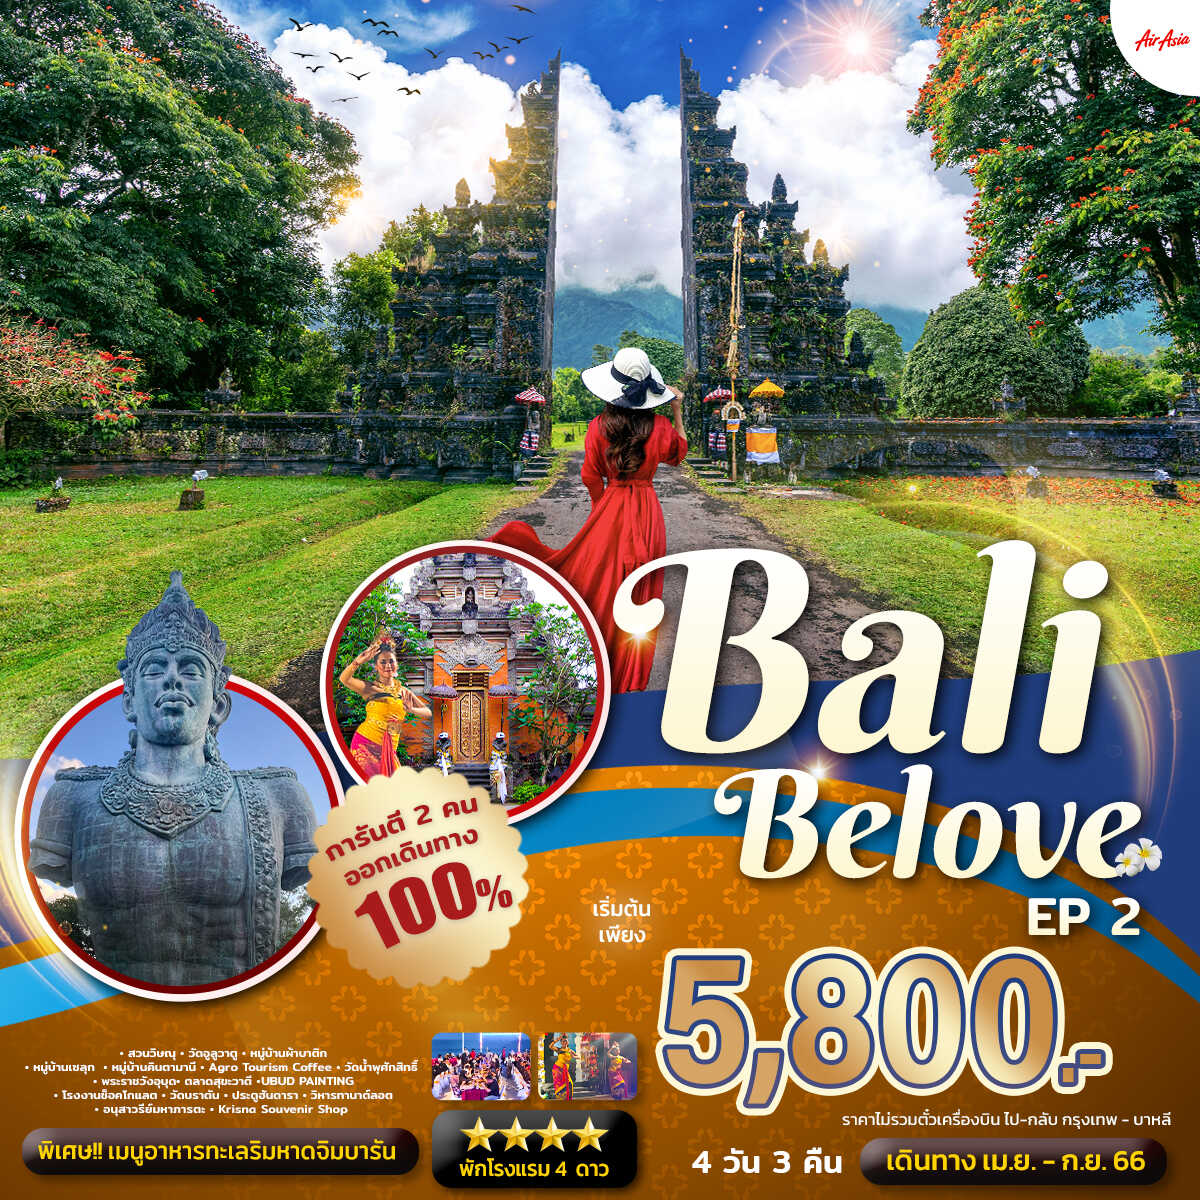 ทัวร์บาหลี Bali Belove EP.2 4 วัน 3 คืน (แพ็คเกจทัวร์ ไม่รวมตั๋วเครื่องบิน)